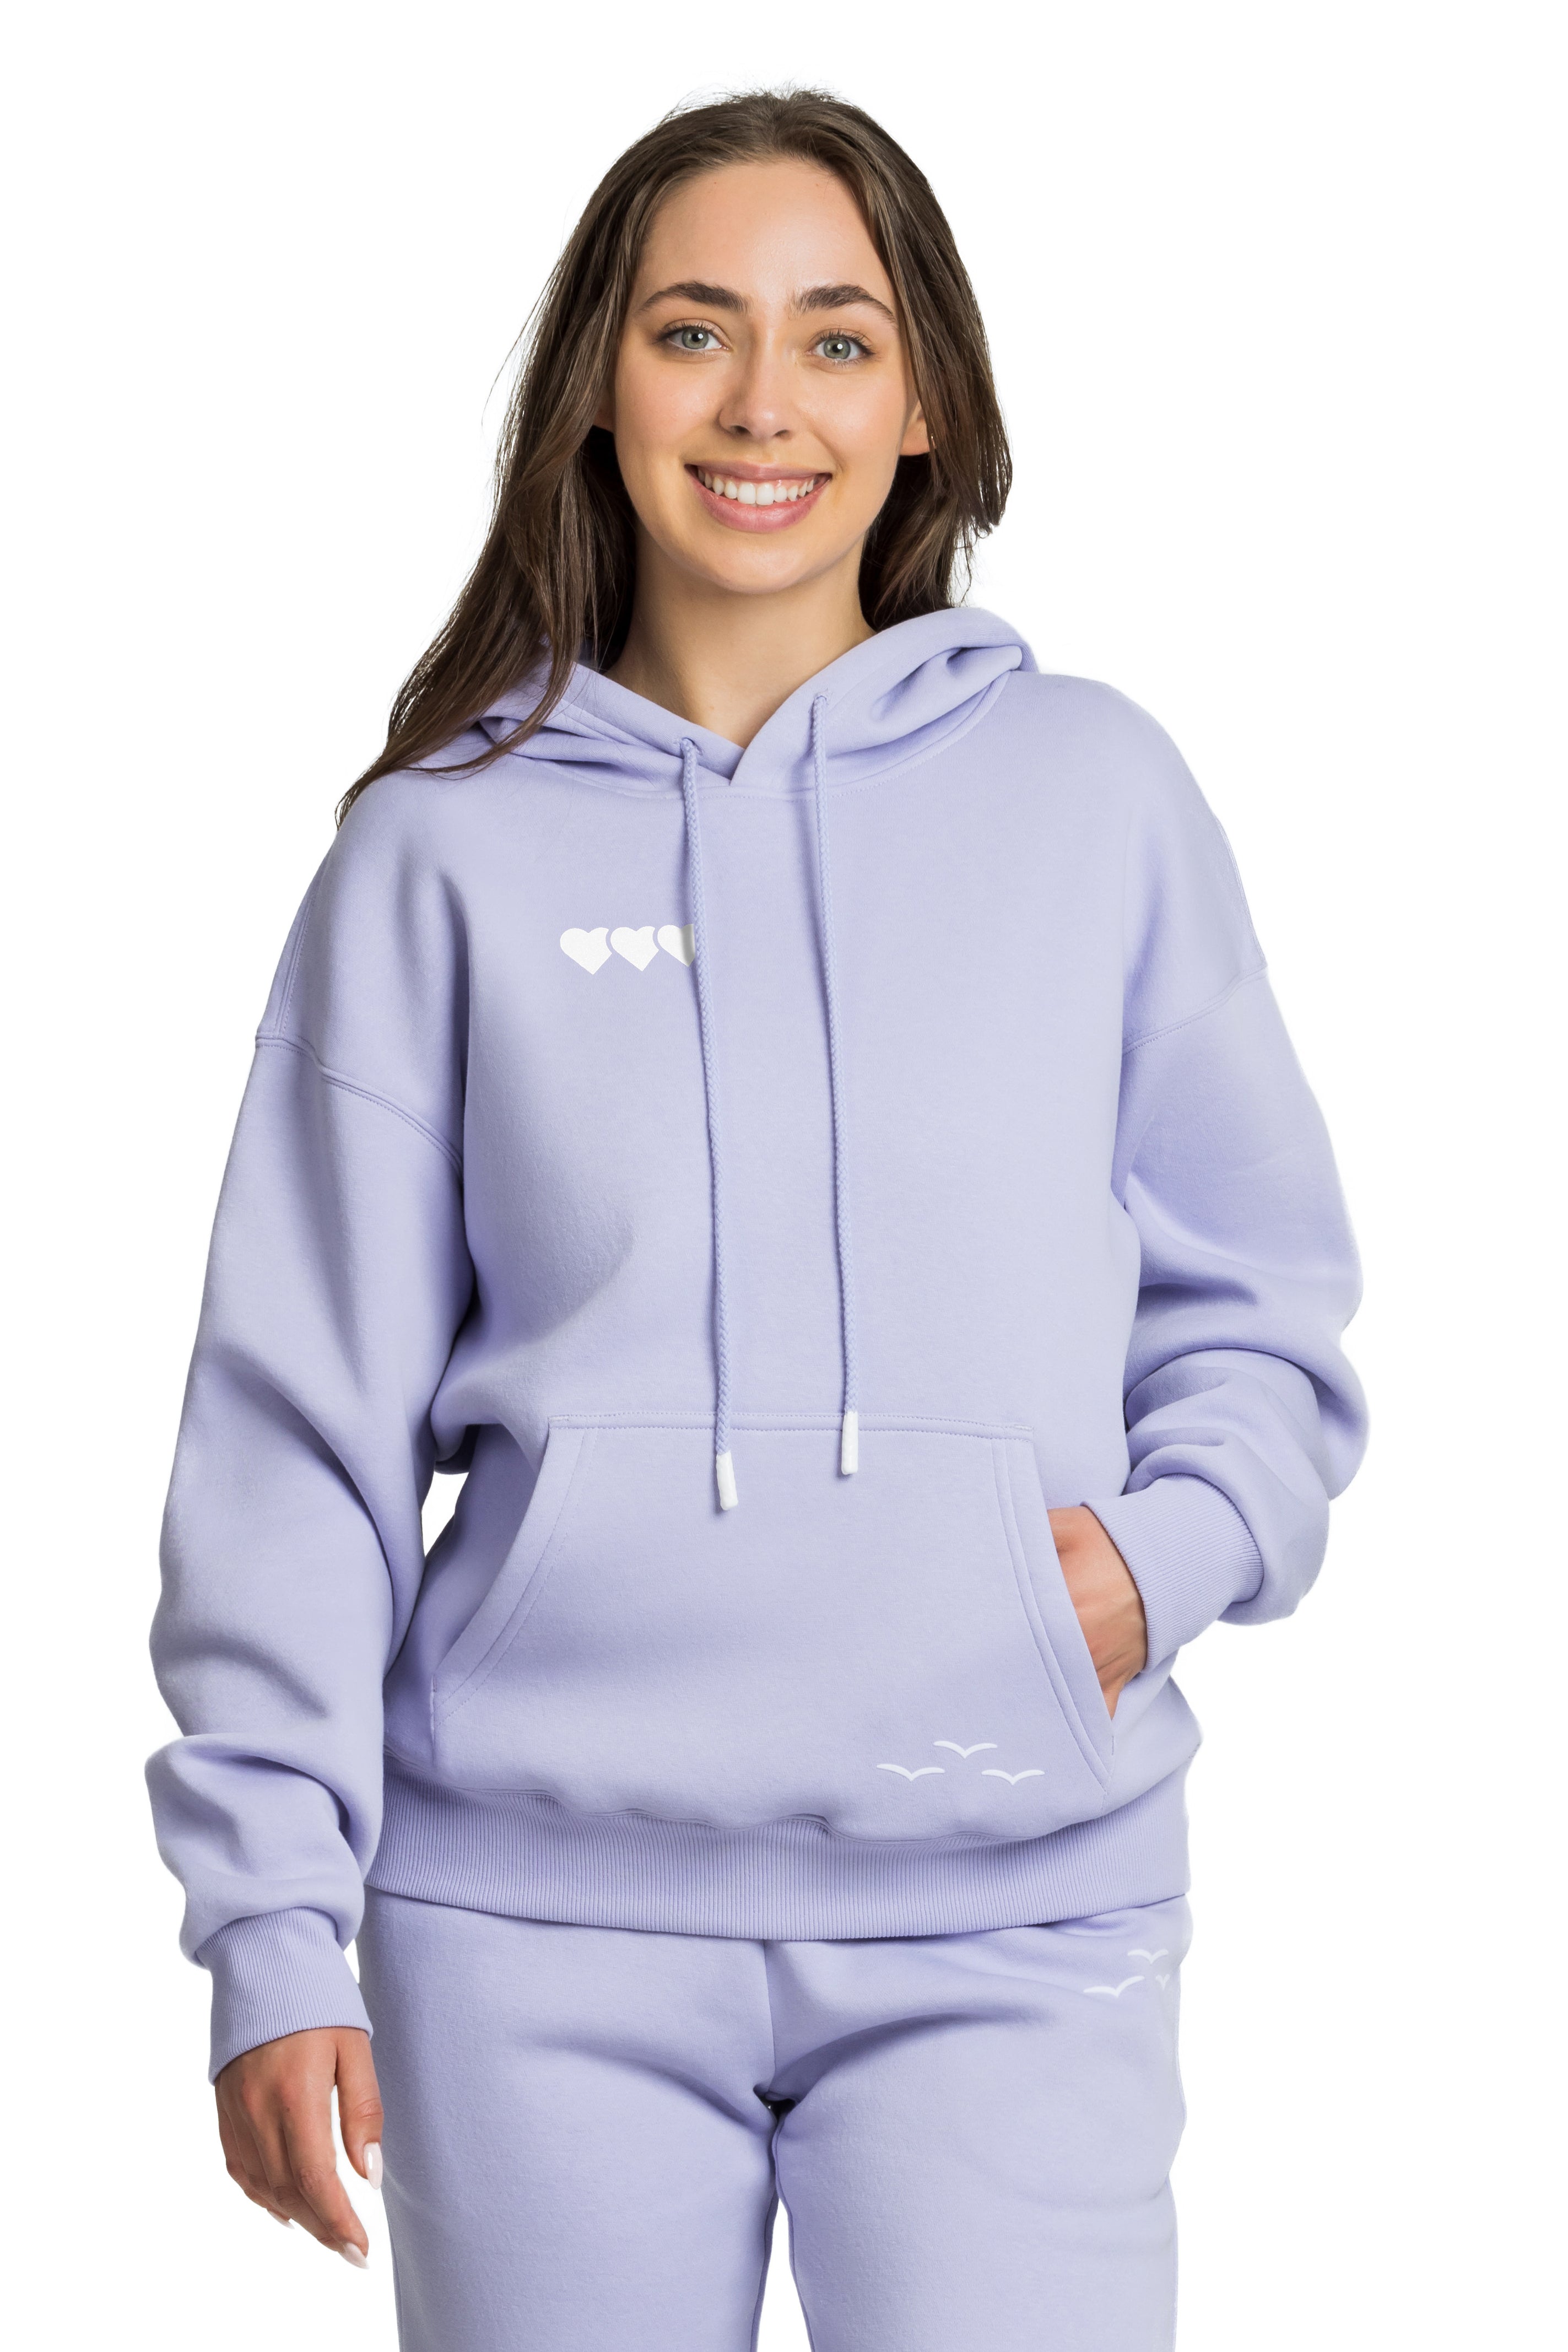 Chlo heart hoodie in Lavender